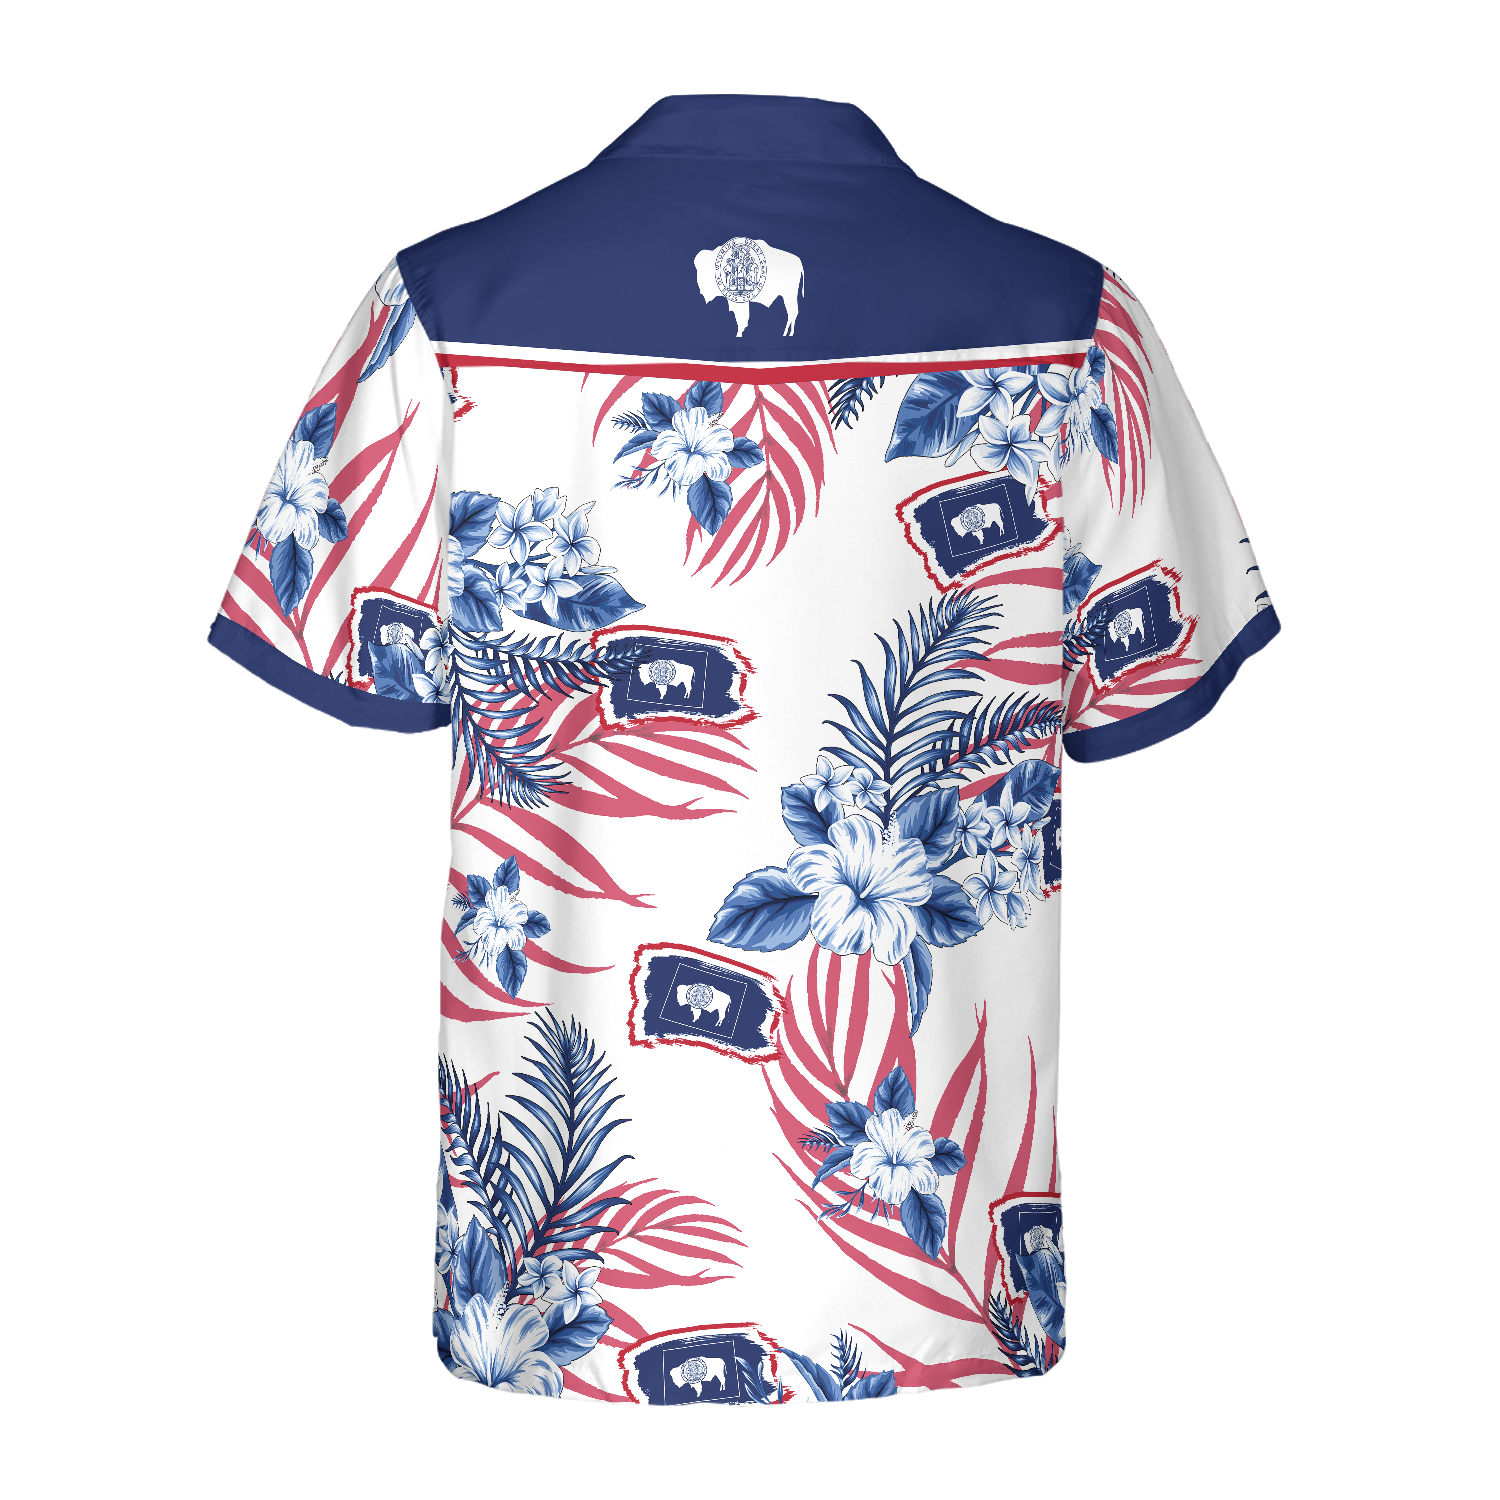 Wyoming Proud Hawaiian Shirt/ Wyoming summer shirt/ Hawaiian shirt for Men/ Women/ Adult